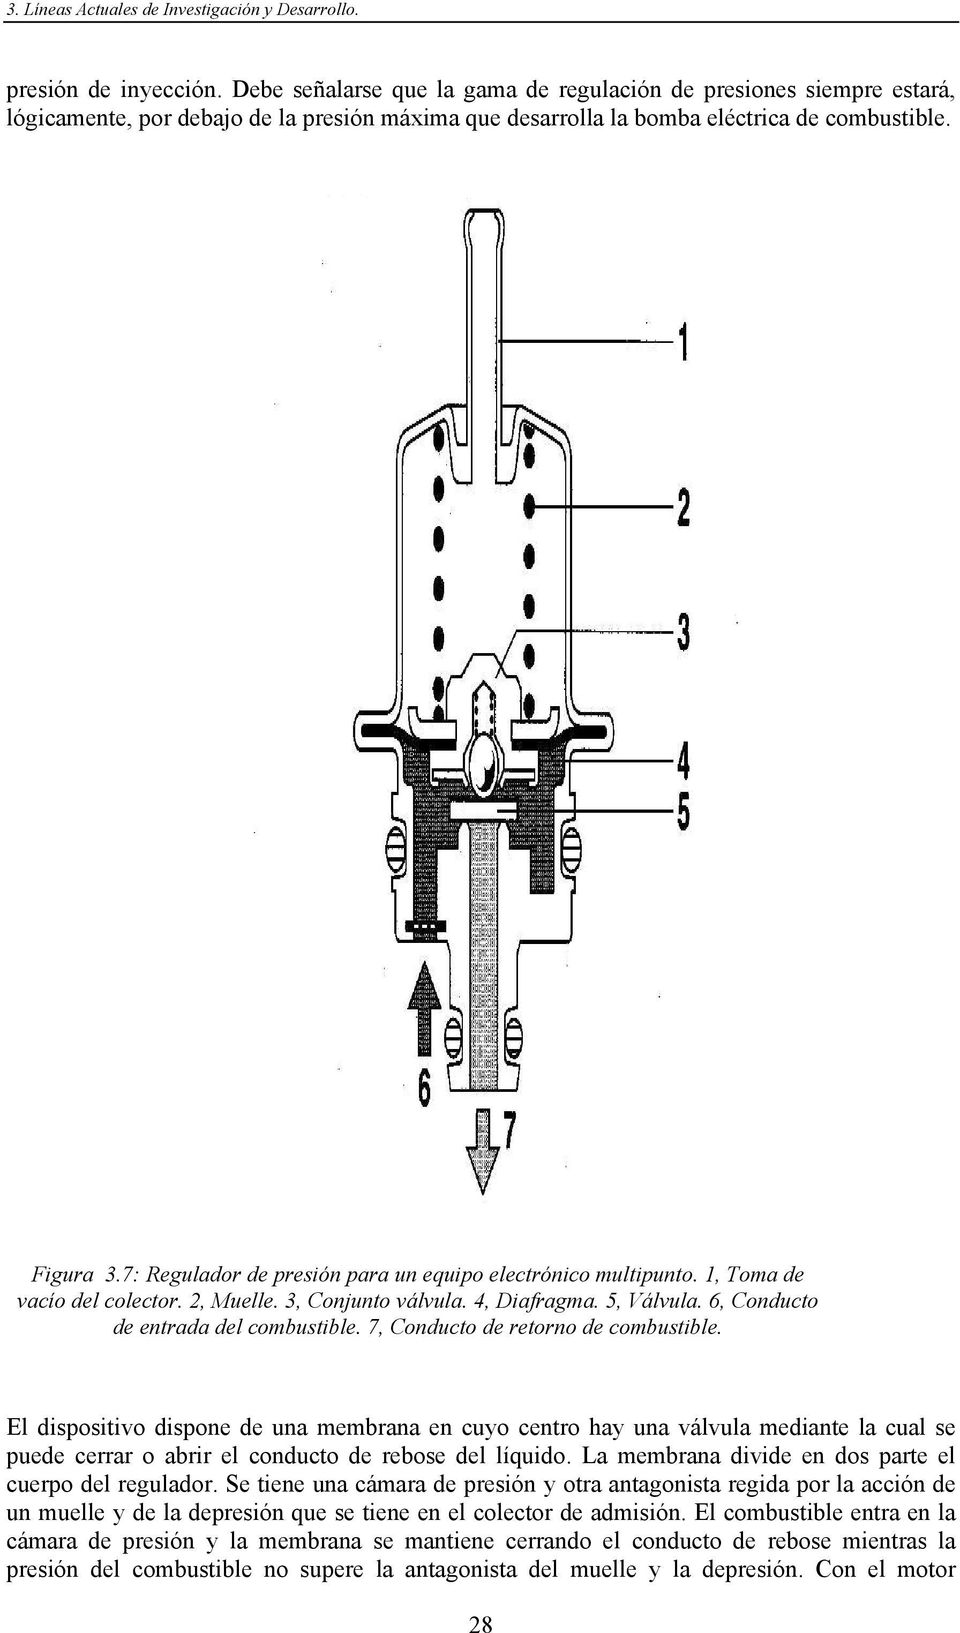 7: Regulador de presión para un equipo electrónico multipunto. 1, Toma de vacío del colector. 2, Muelle. 3, Conjunto válvula. 4, Diafragma. 5, Válvula. 6, Conducto de entrada del combustible.